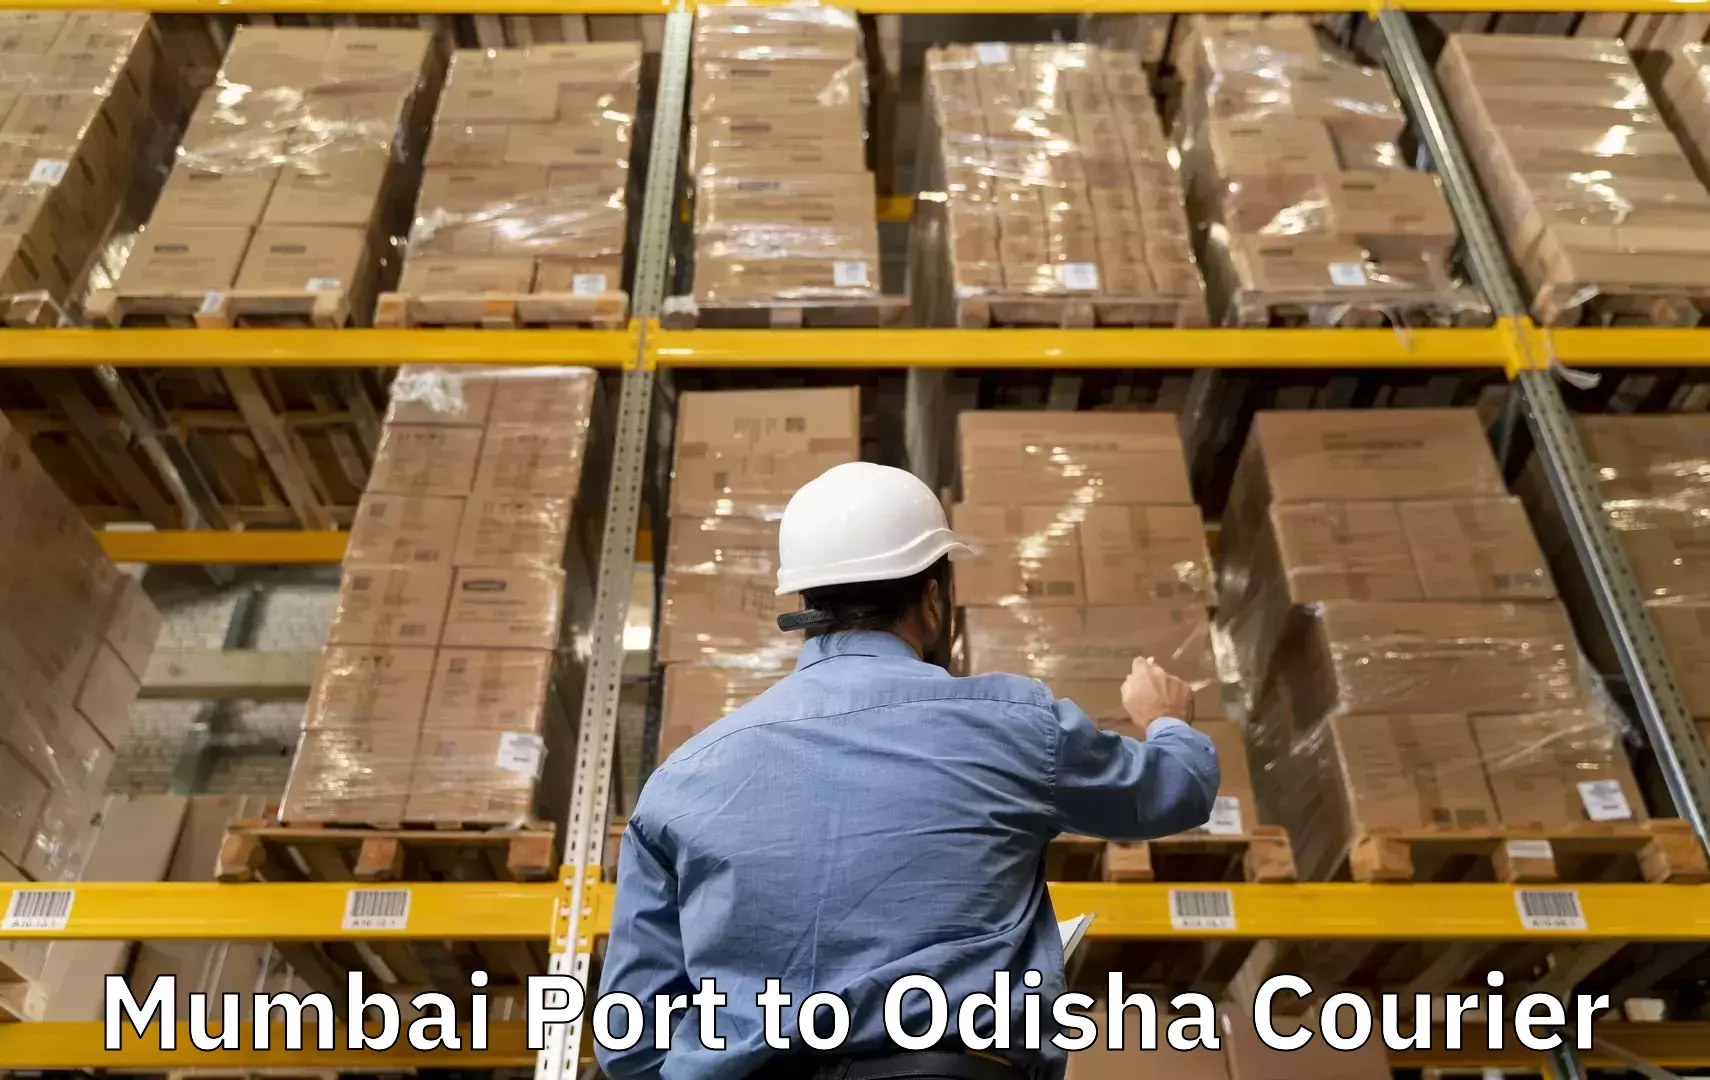 Baggage transport services Mumbai Port to Kamakhyanagar